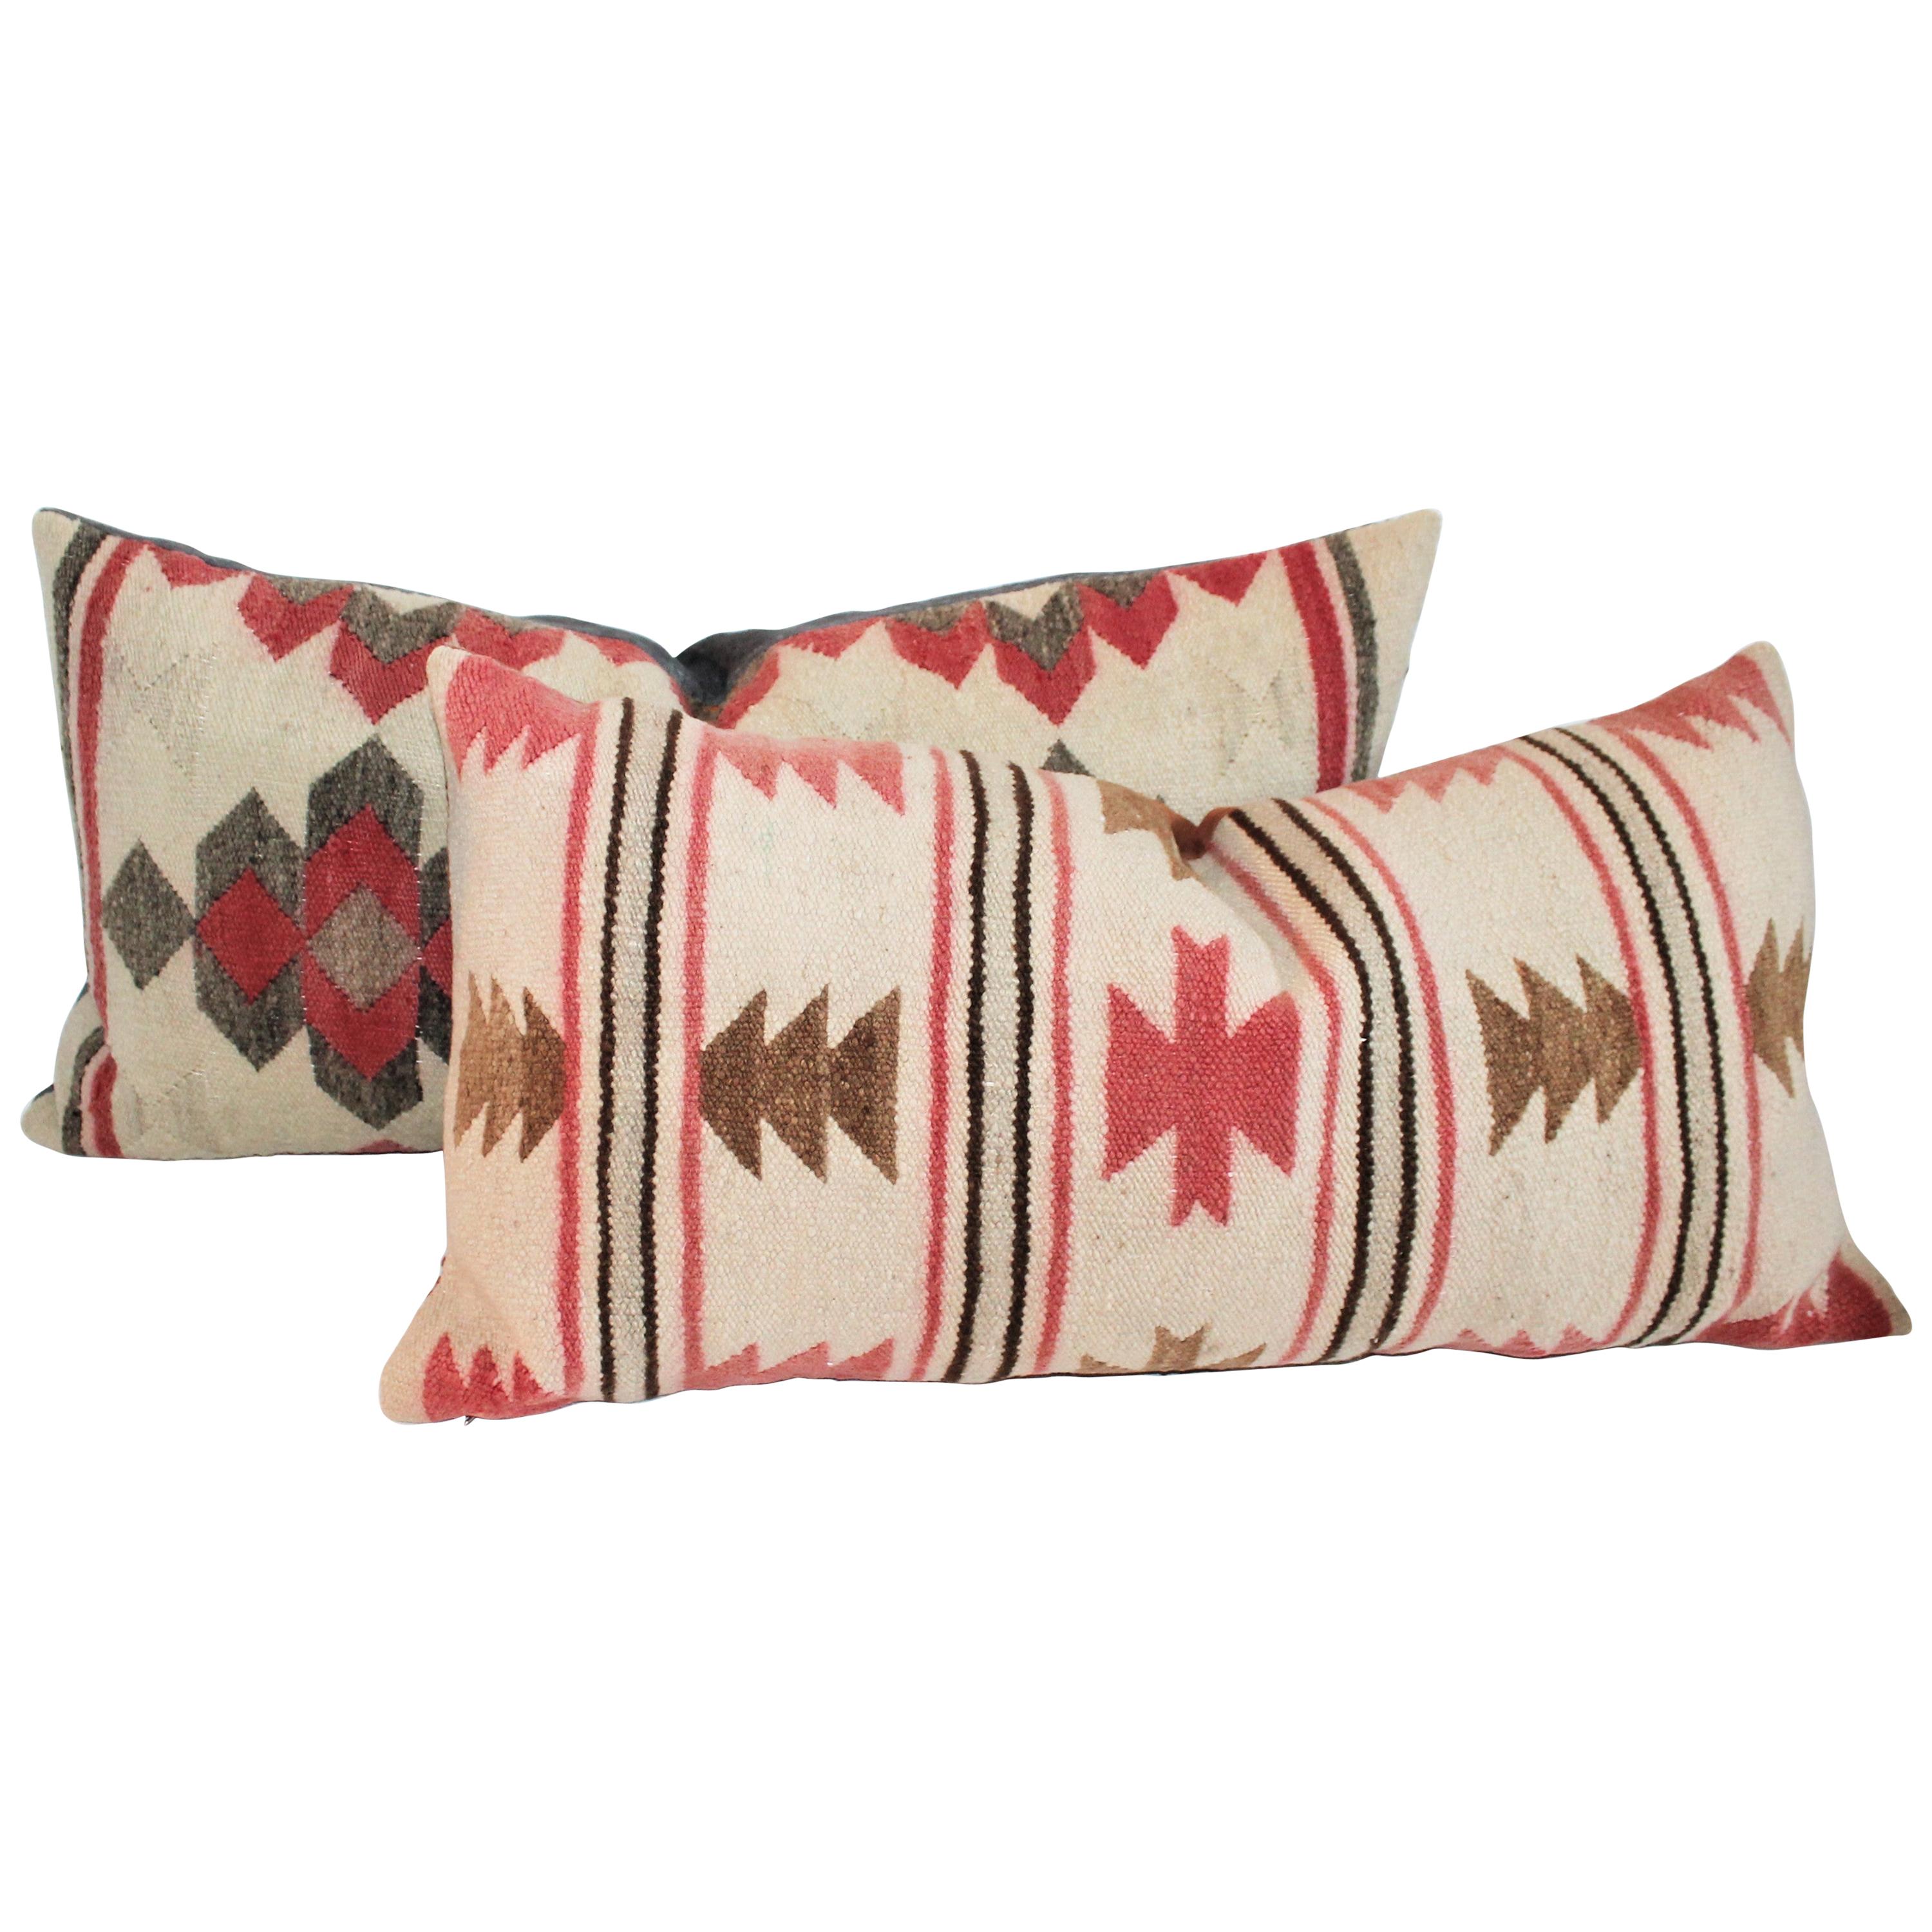 Navajo Indian Weaving Bolster Pillows, 2